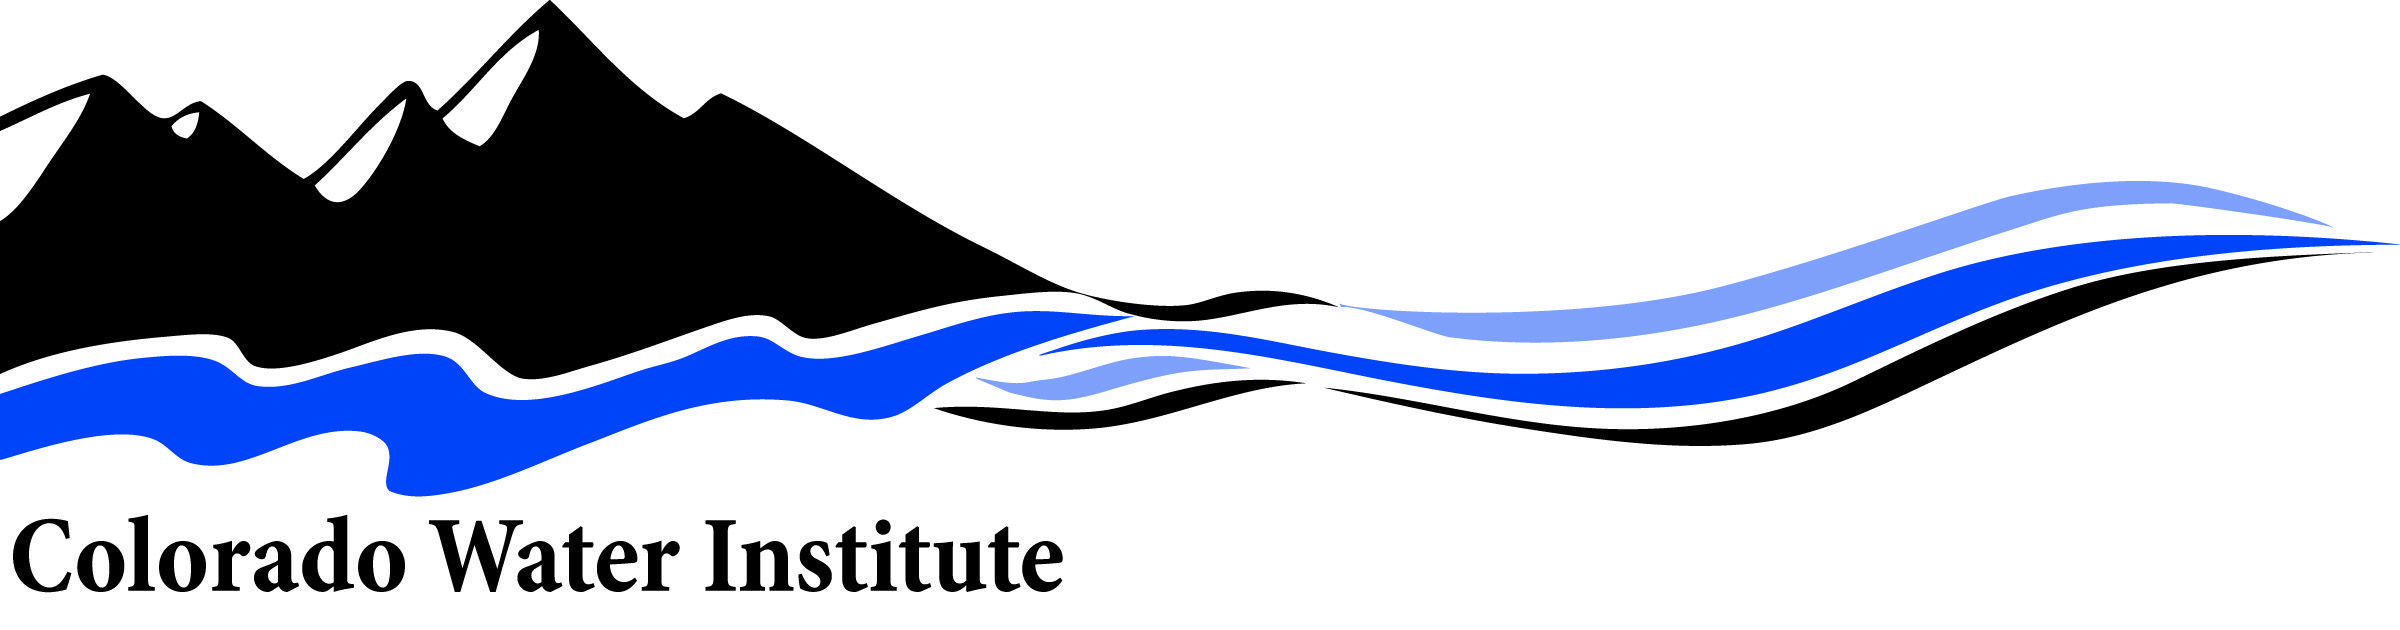 River Water Logo - CWI Logos